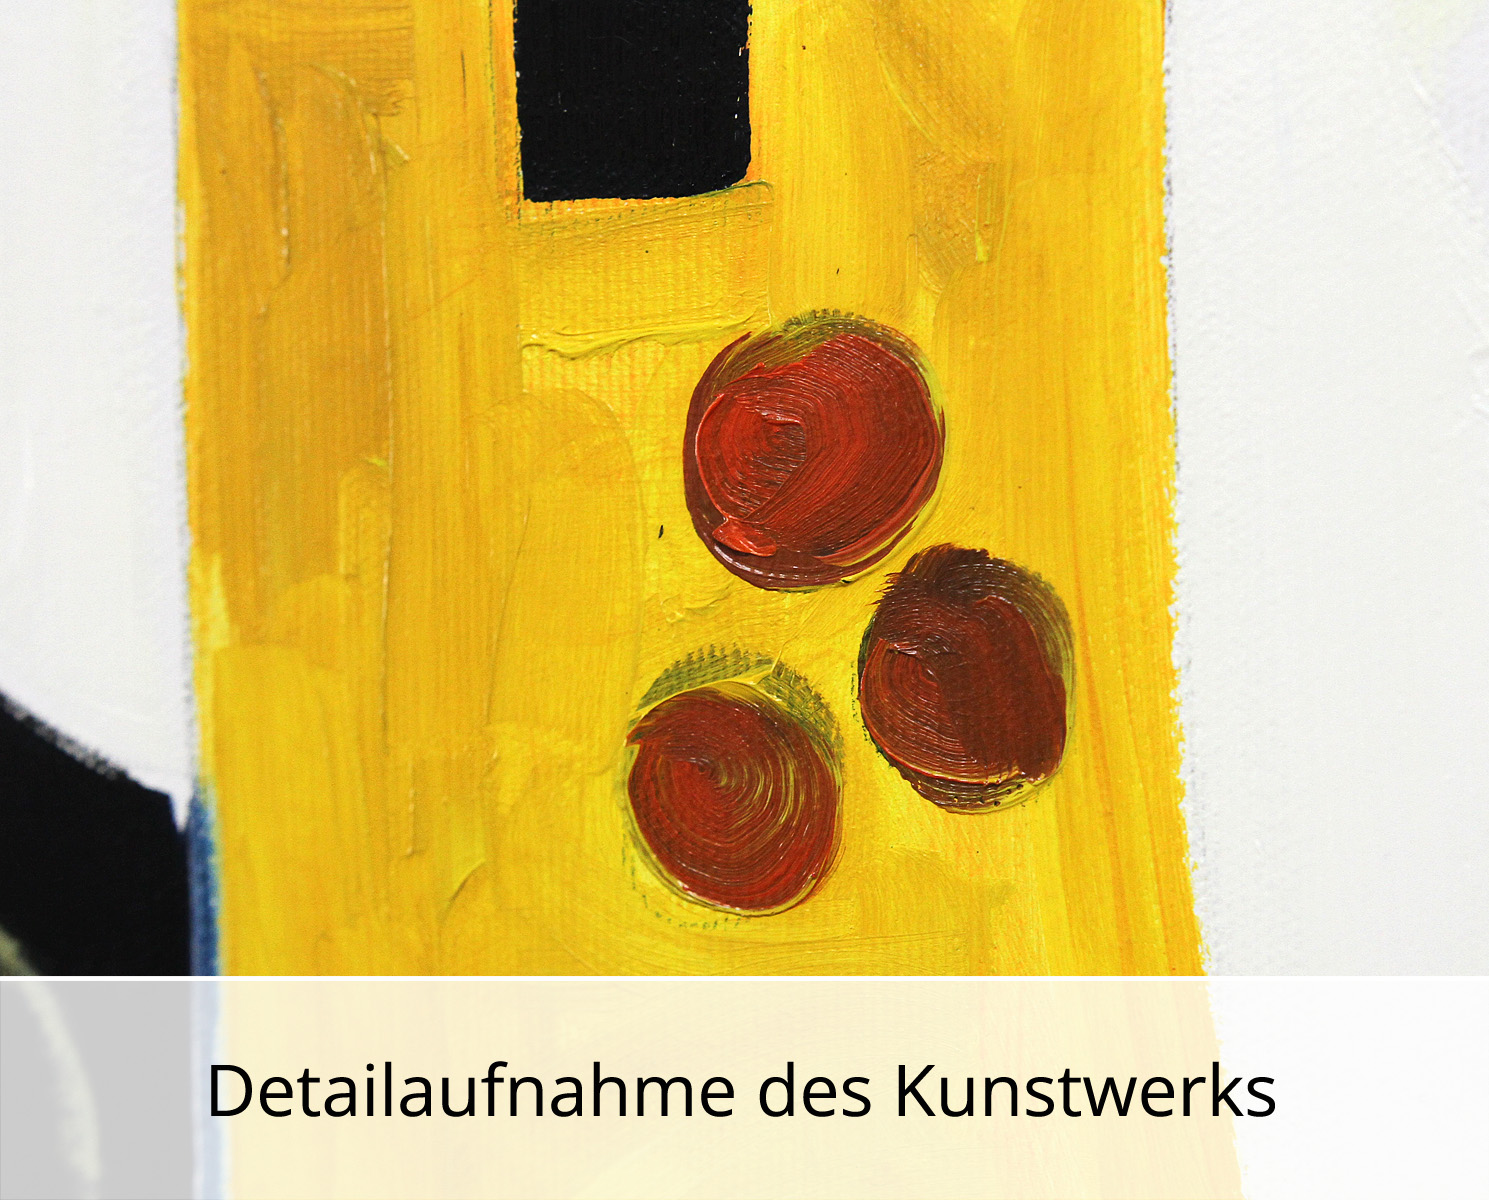 M. Cieśla: "Abstraktes Porträt 43", Original/Unikat, Expressionistisches Ölgemälde